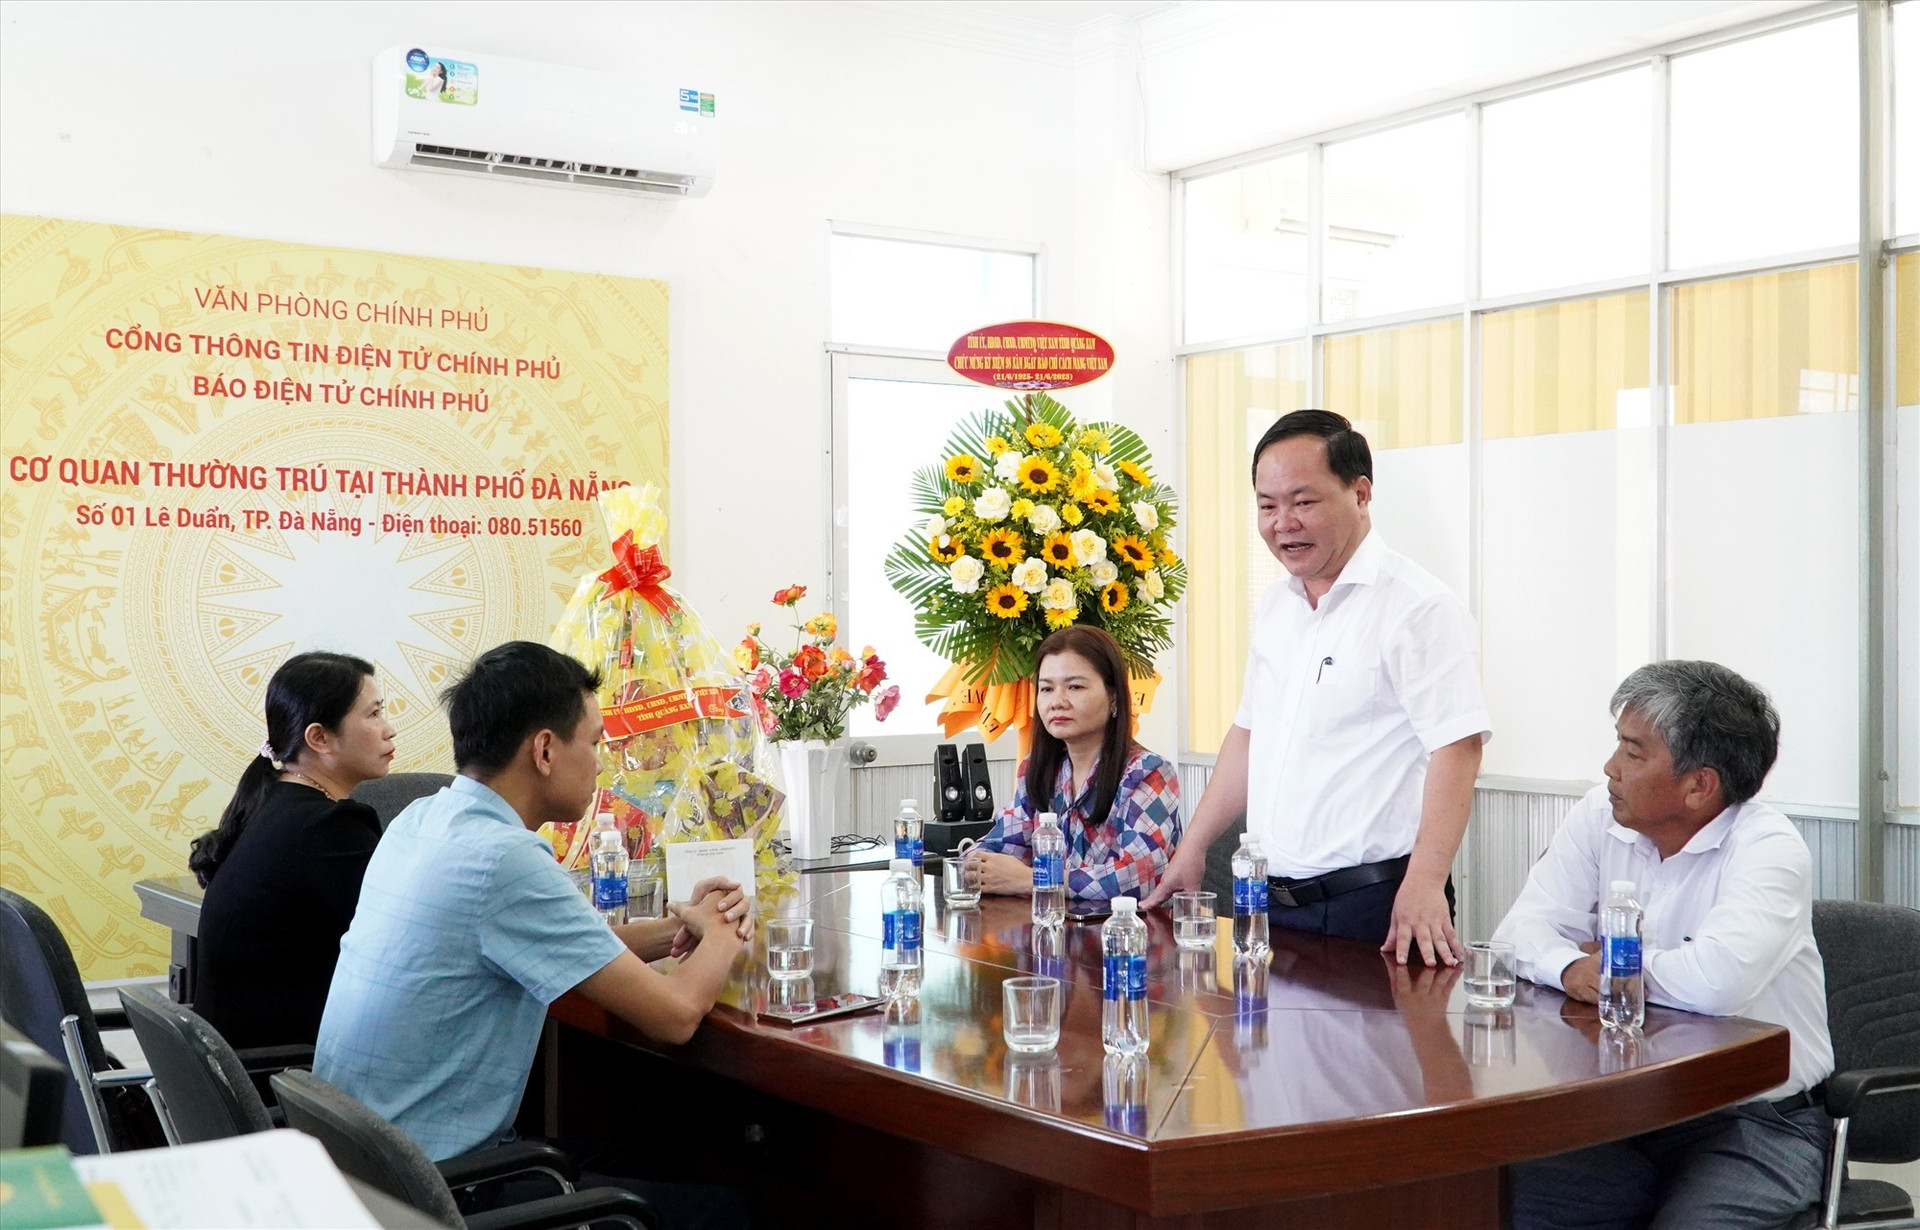 Phó Chủ tịch UBND tỉnh Nguyễn Hồng Quang thăm Cơ quan thường trú Báo điện tử Chính phủ tại TP.Đà Nẵng. Ảnh: H.Q